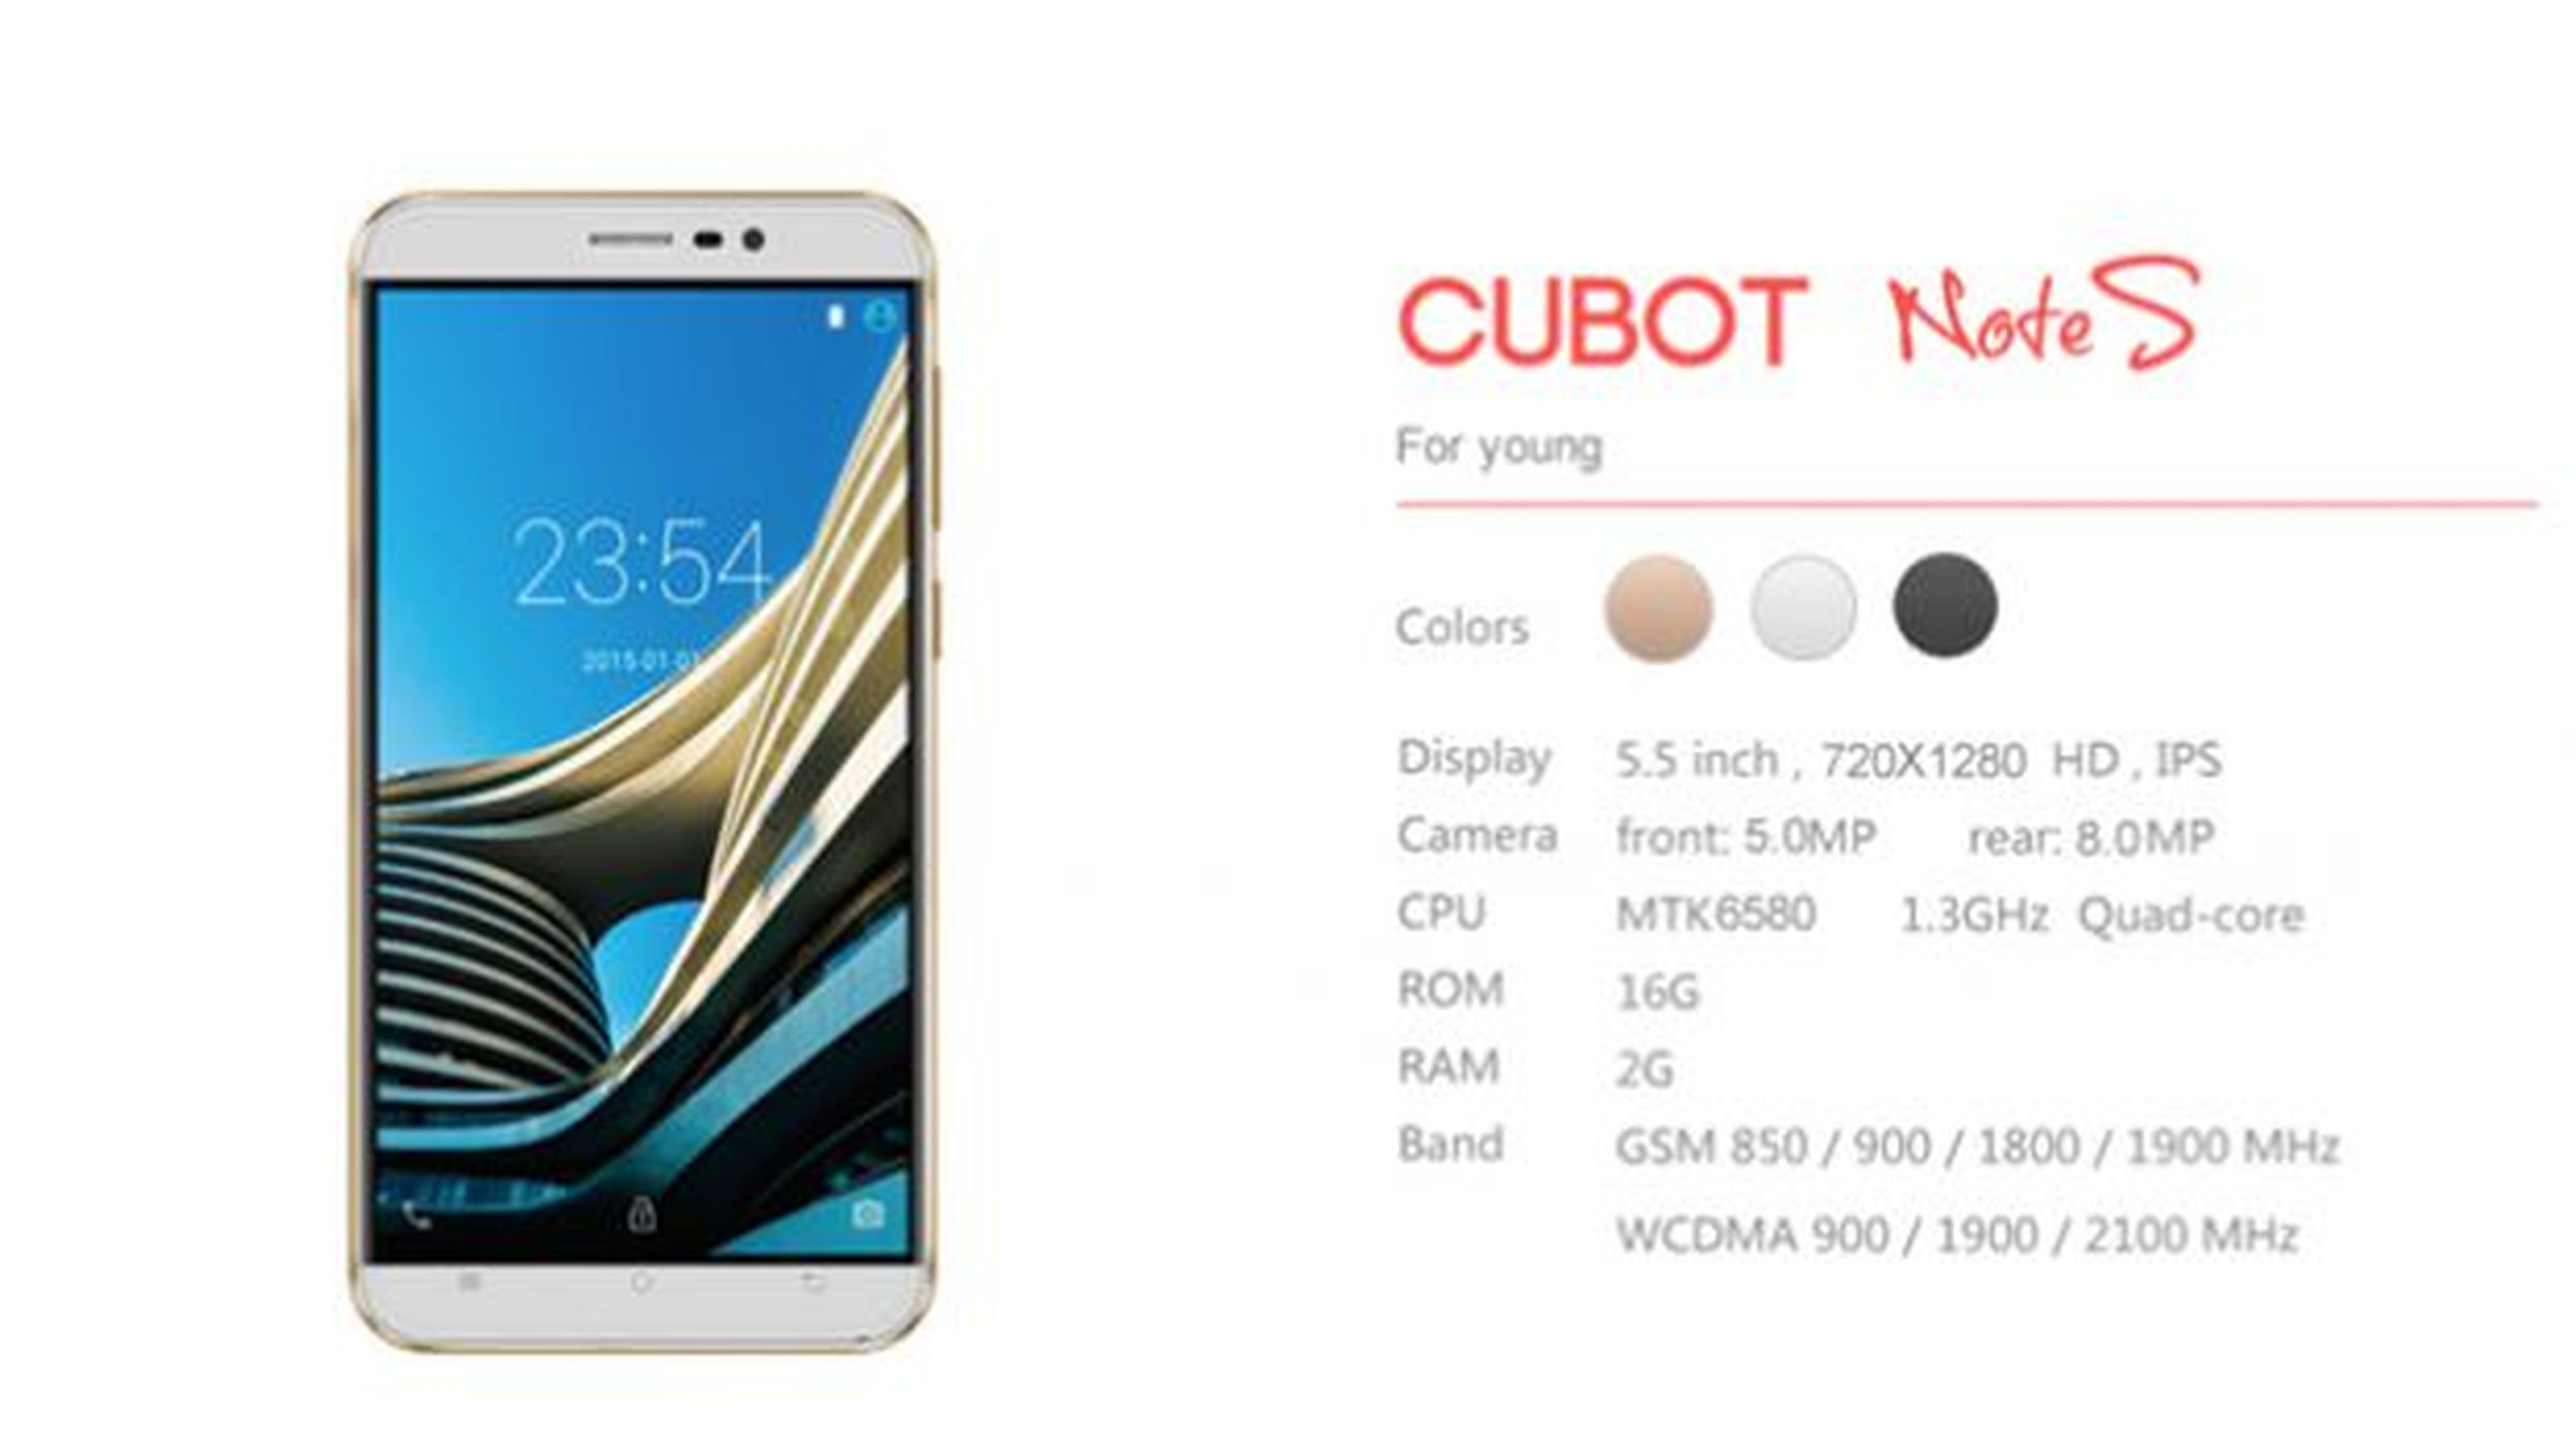 Cubot Note S, un phablet chino de 5,5 con unas características muy interesantes y por el increíble precio de 64,64 euros.